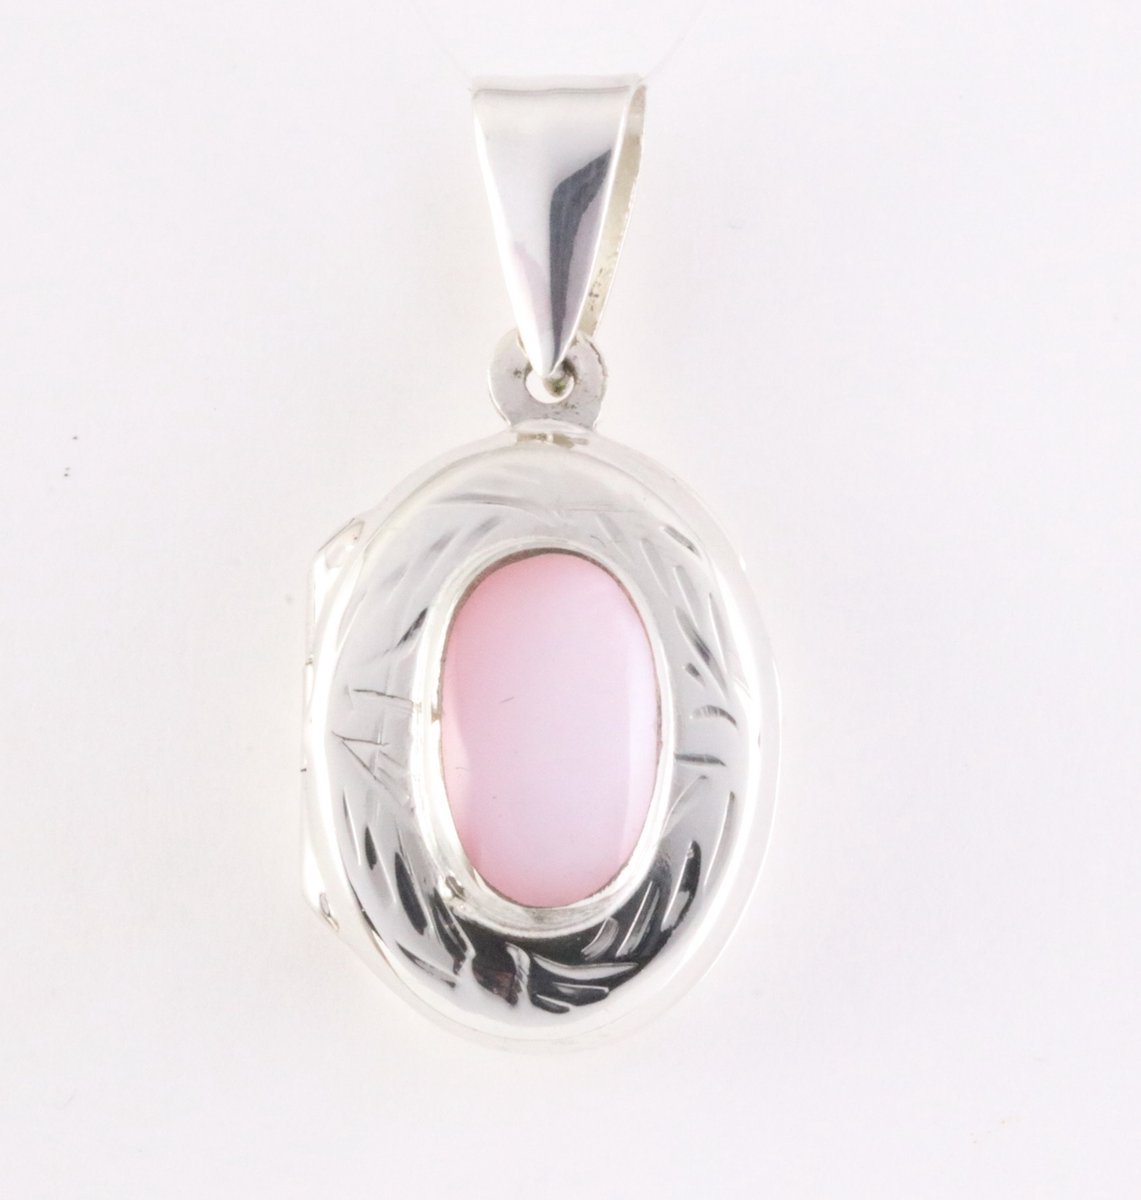 Fijn bewerkt zilveren medaillon met roze parelmoer